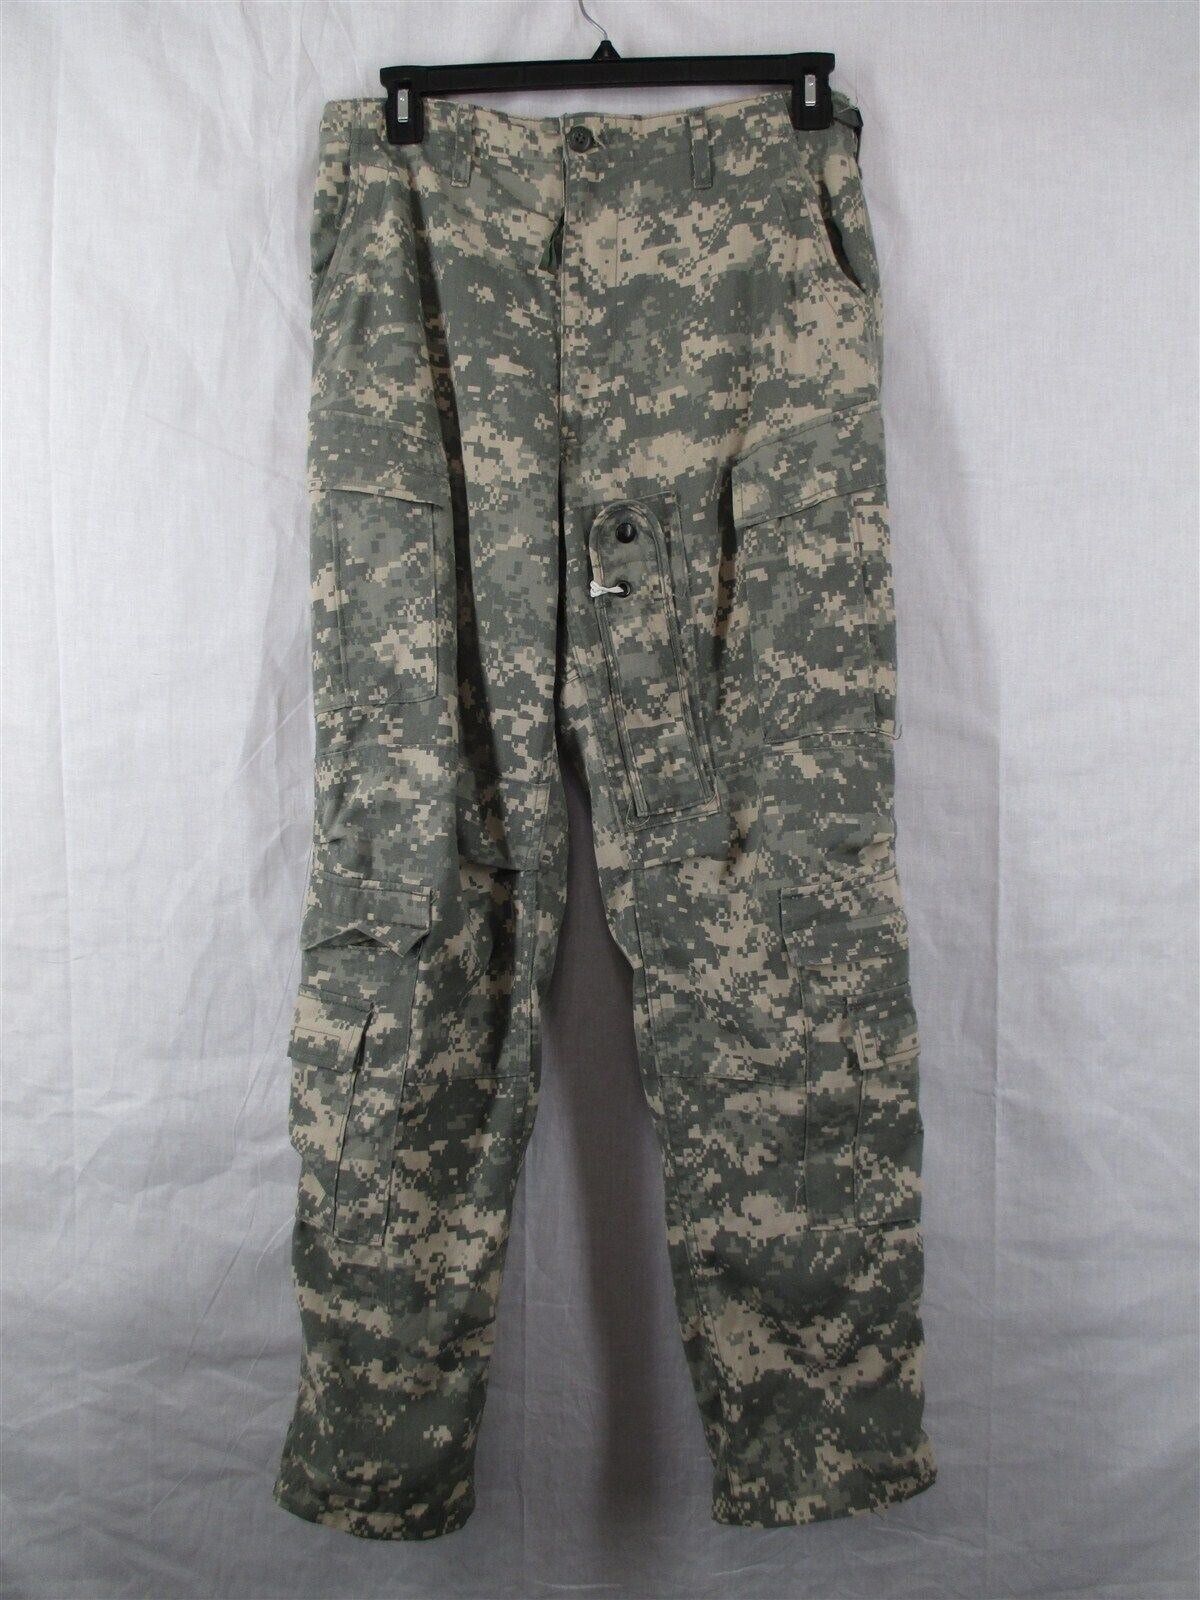 Aramid/Nomex Medium Regular Army Aircrew Pants/Trousers Digital A2CU ACU USGI